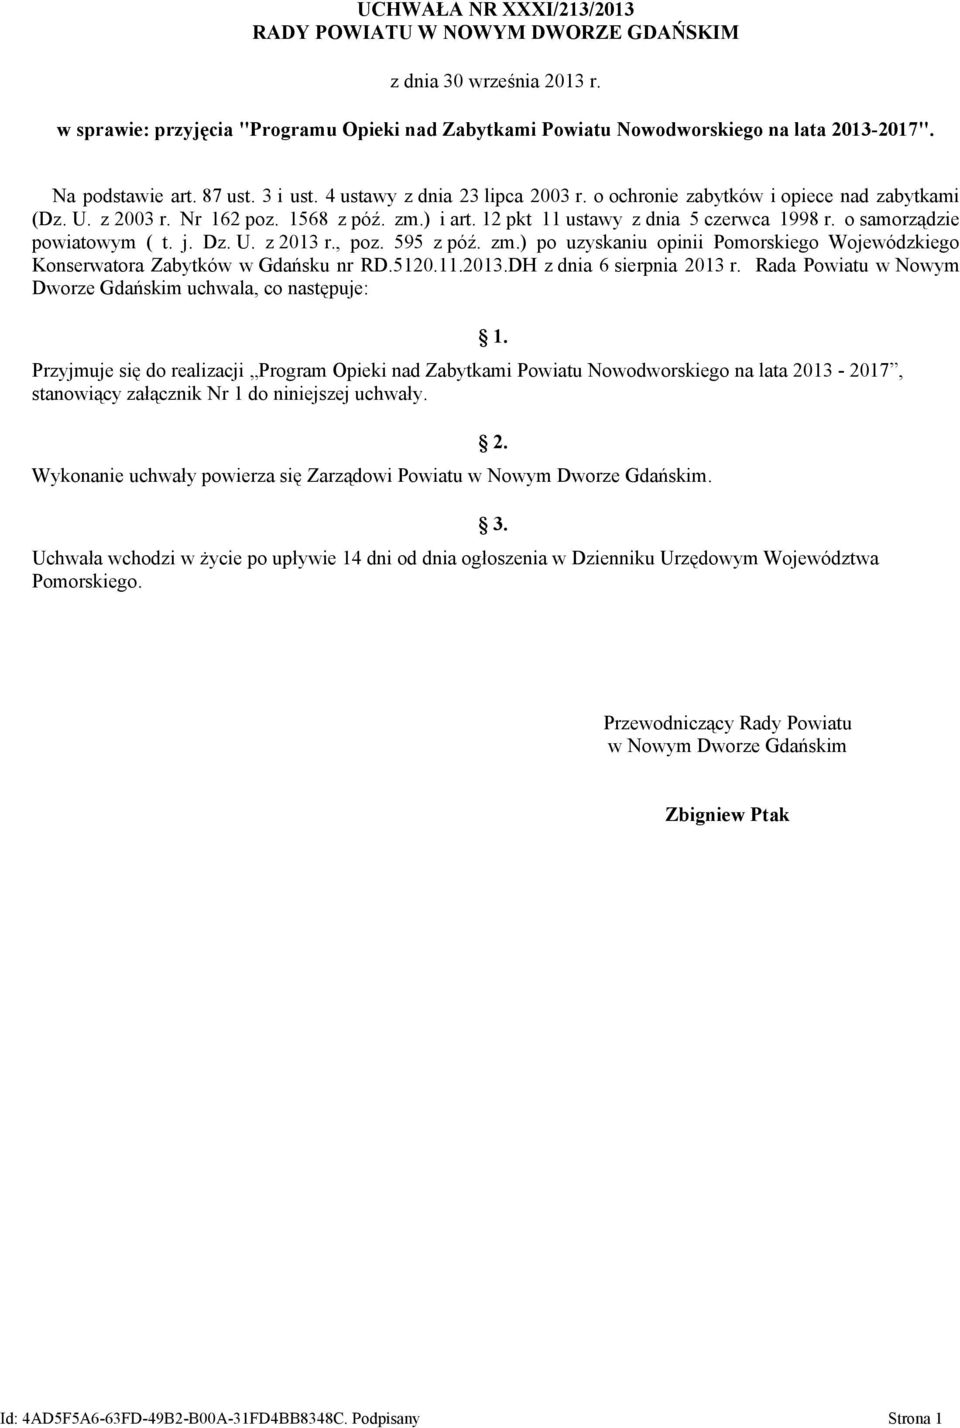 12 pkt 11 ustawy z dnia 5 czerwca 1998 r. o samorządzie powiatowym ( t. j. Dz. U. z 2013 r., poz. 595 z póź. zm.) po uzyskaniu opinii Pomorskiego Wojewódzkiego Konserwatora nr RD.5120.11.2013.DH z dnia 6 sierpnia 2013 r.